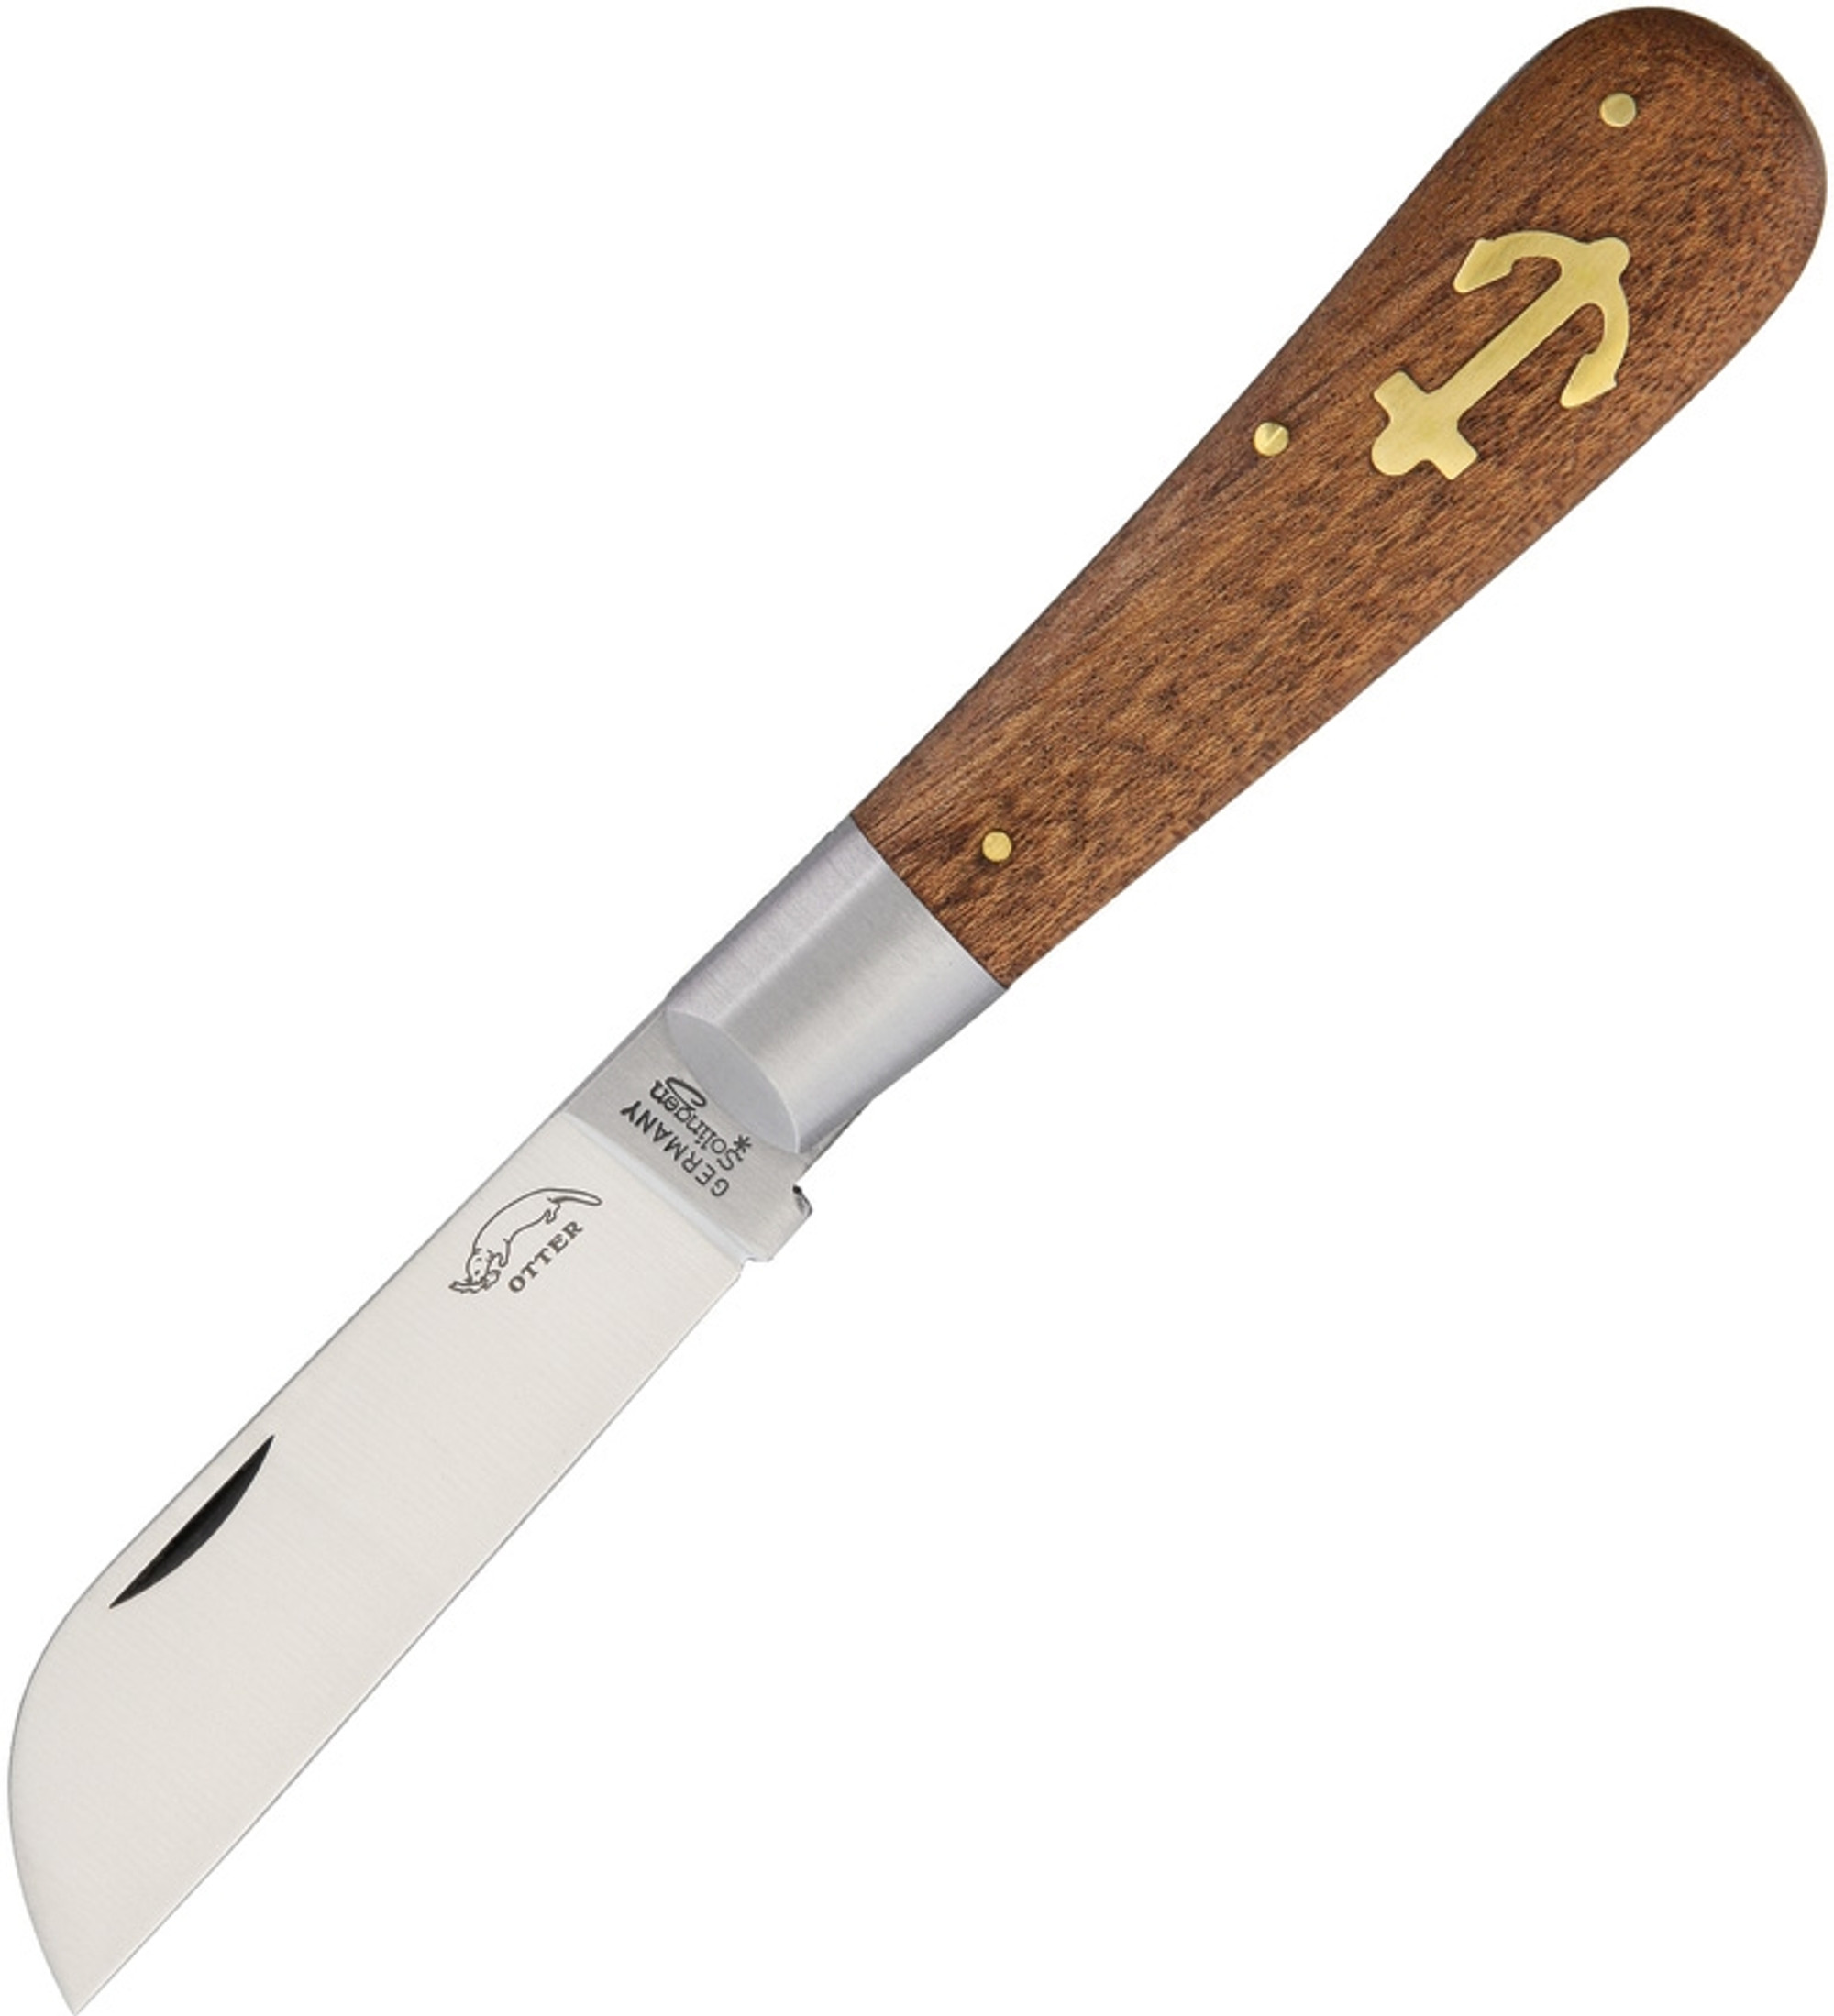 Large Anchor Knife Sapeli Wood